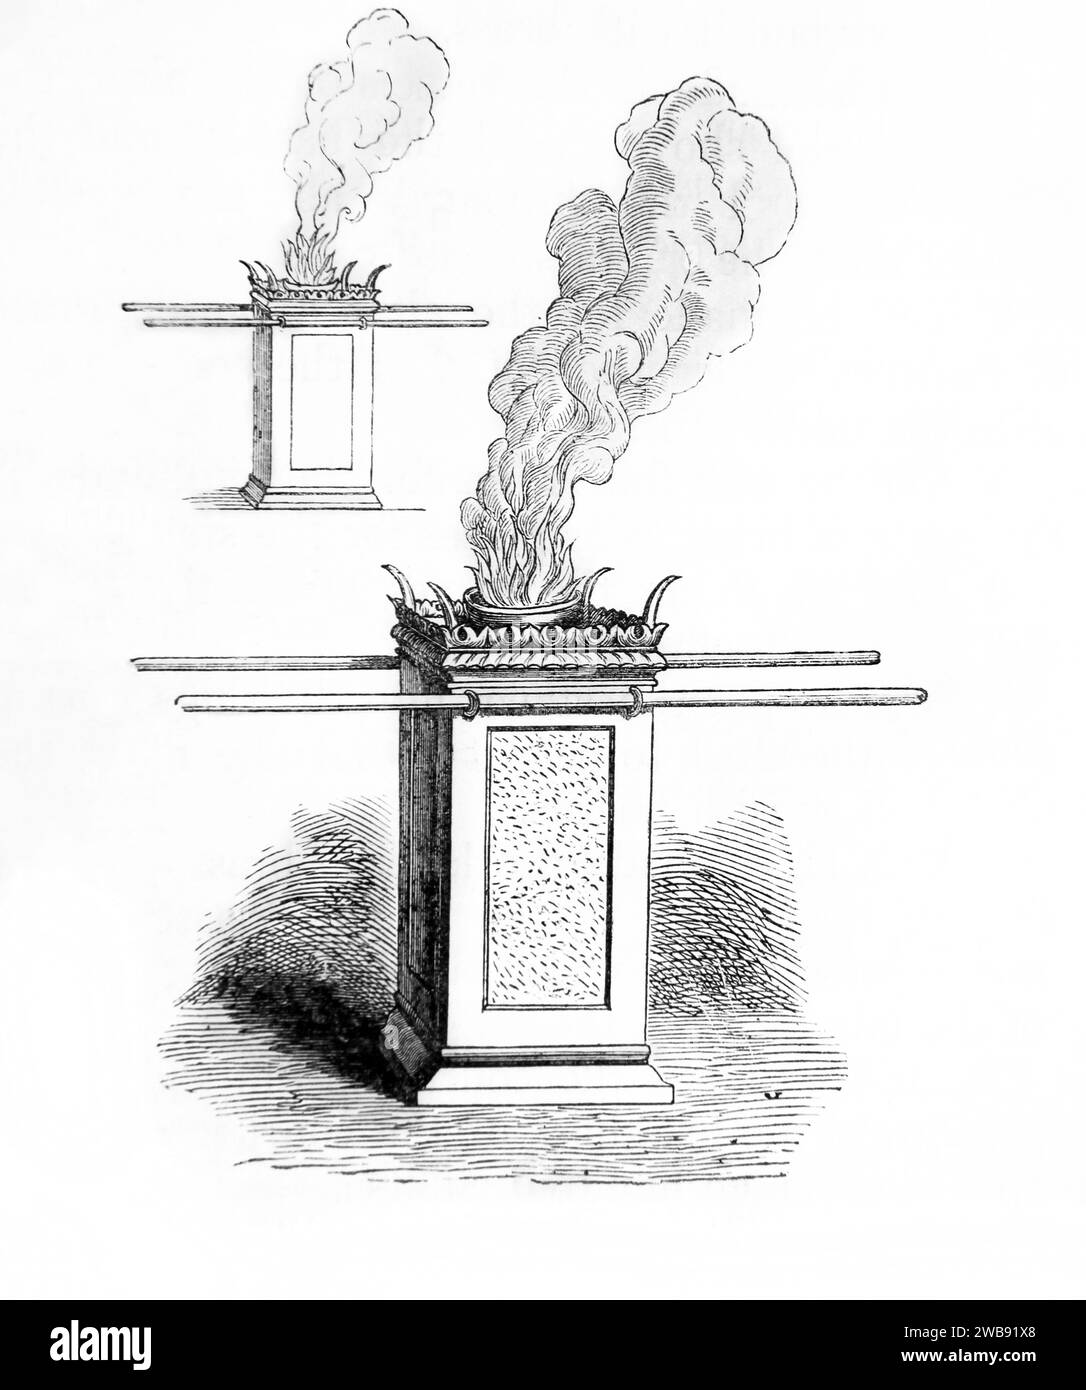 Incisione in legno dell'altare dell'Incenso al Tabernacolo dalla Bibbia di famiglia illustrata Foto Stock